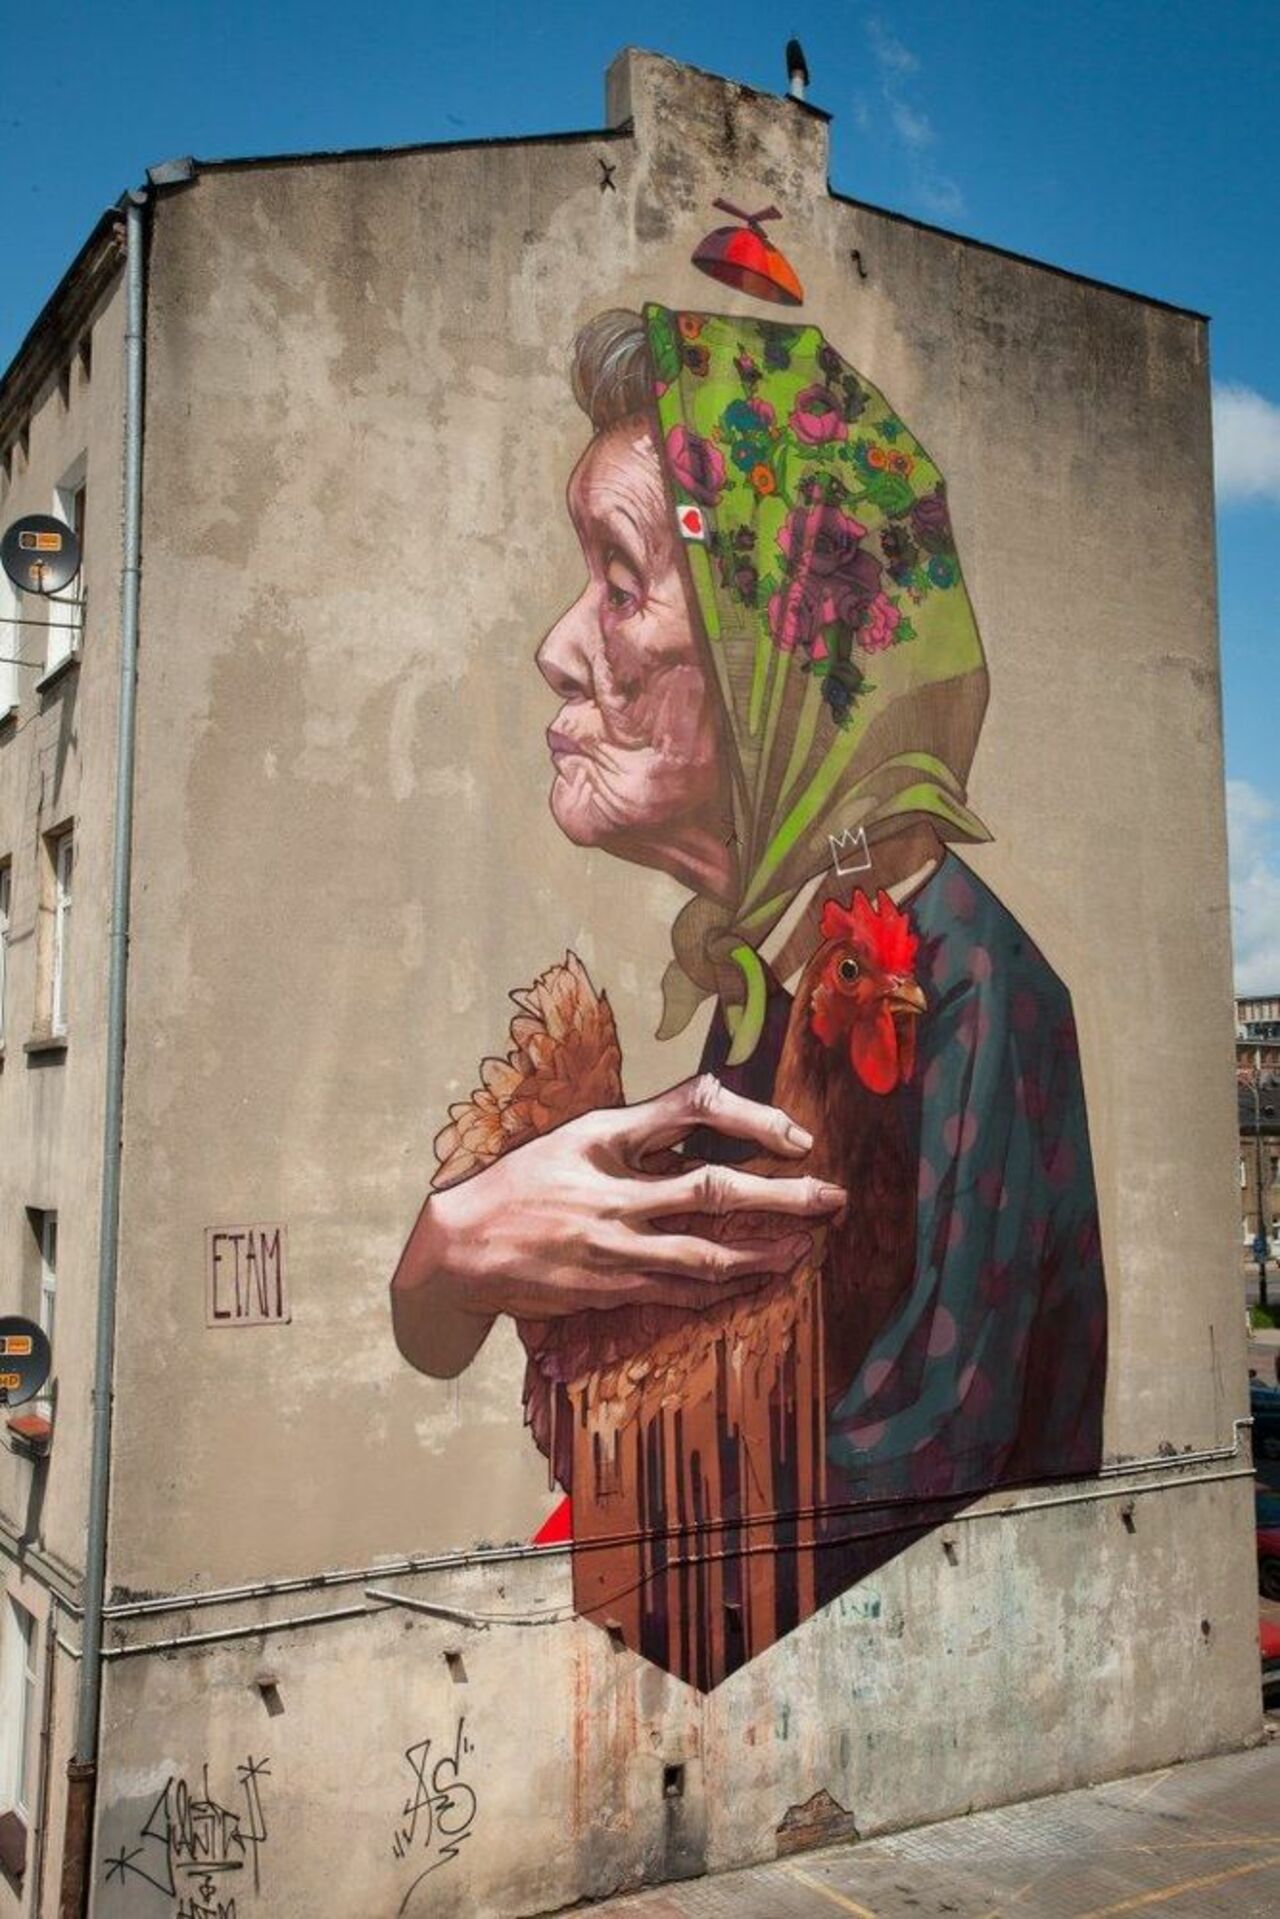 RT @DanielGennaoui: Beautiful street art by Etam Cru. Find more: http://bit.ly/1zg80An #graffiti #streetart http://t.co/8L6FFljeTq